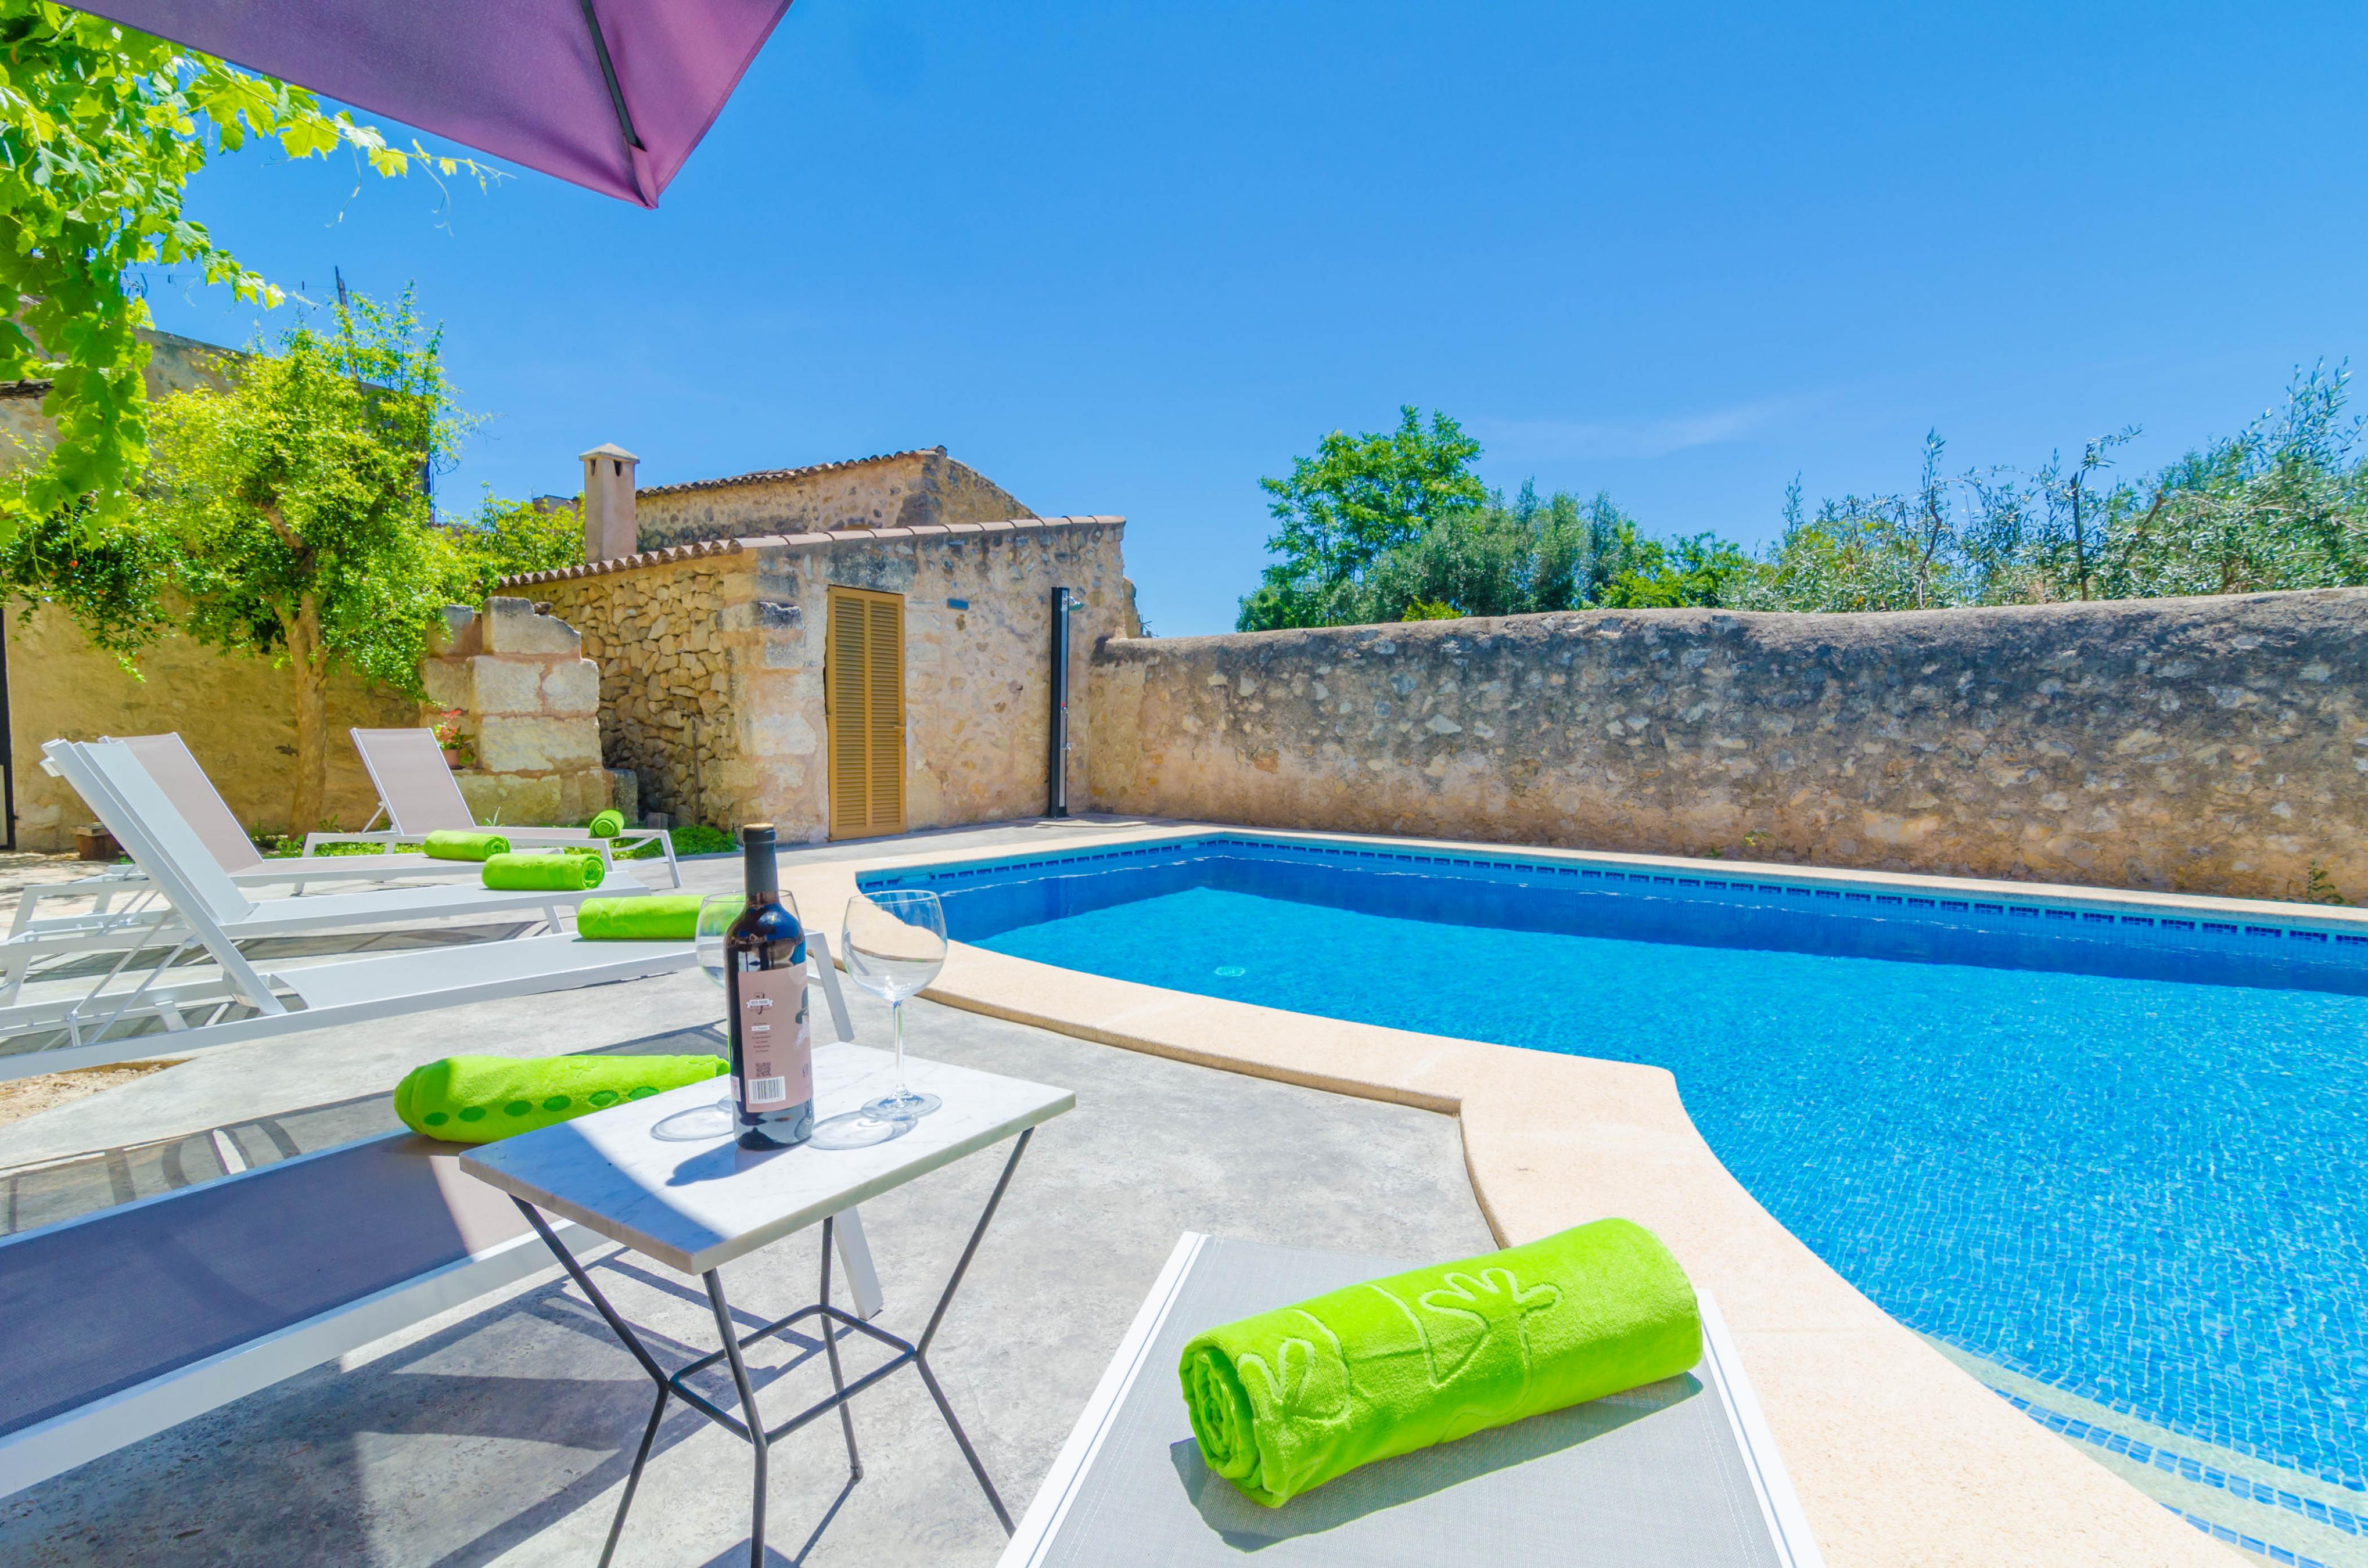 Property Image 2 - SA CASA VELLA - Villa with private pool in Vilafranca de Bonany. Free WiFi